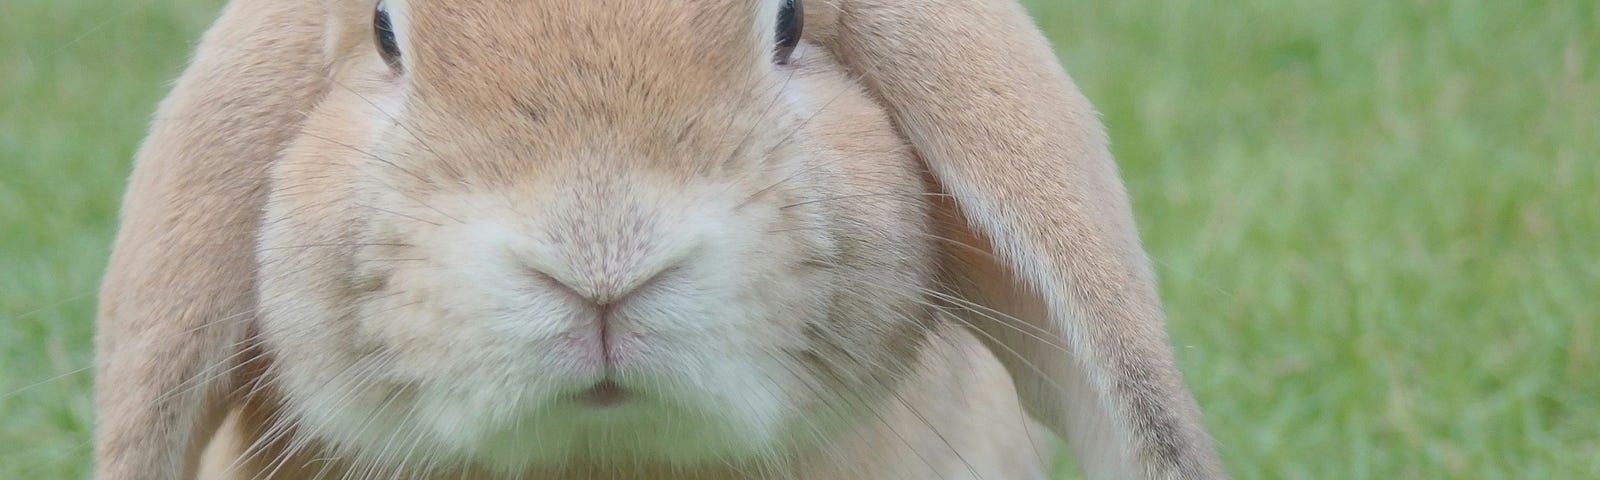 A rabbit